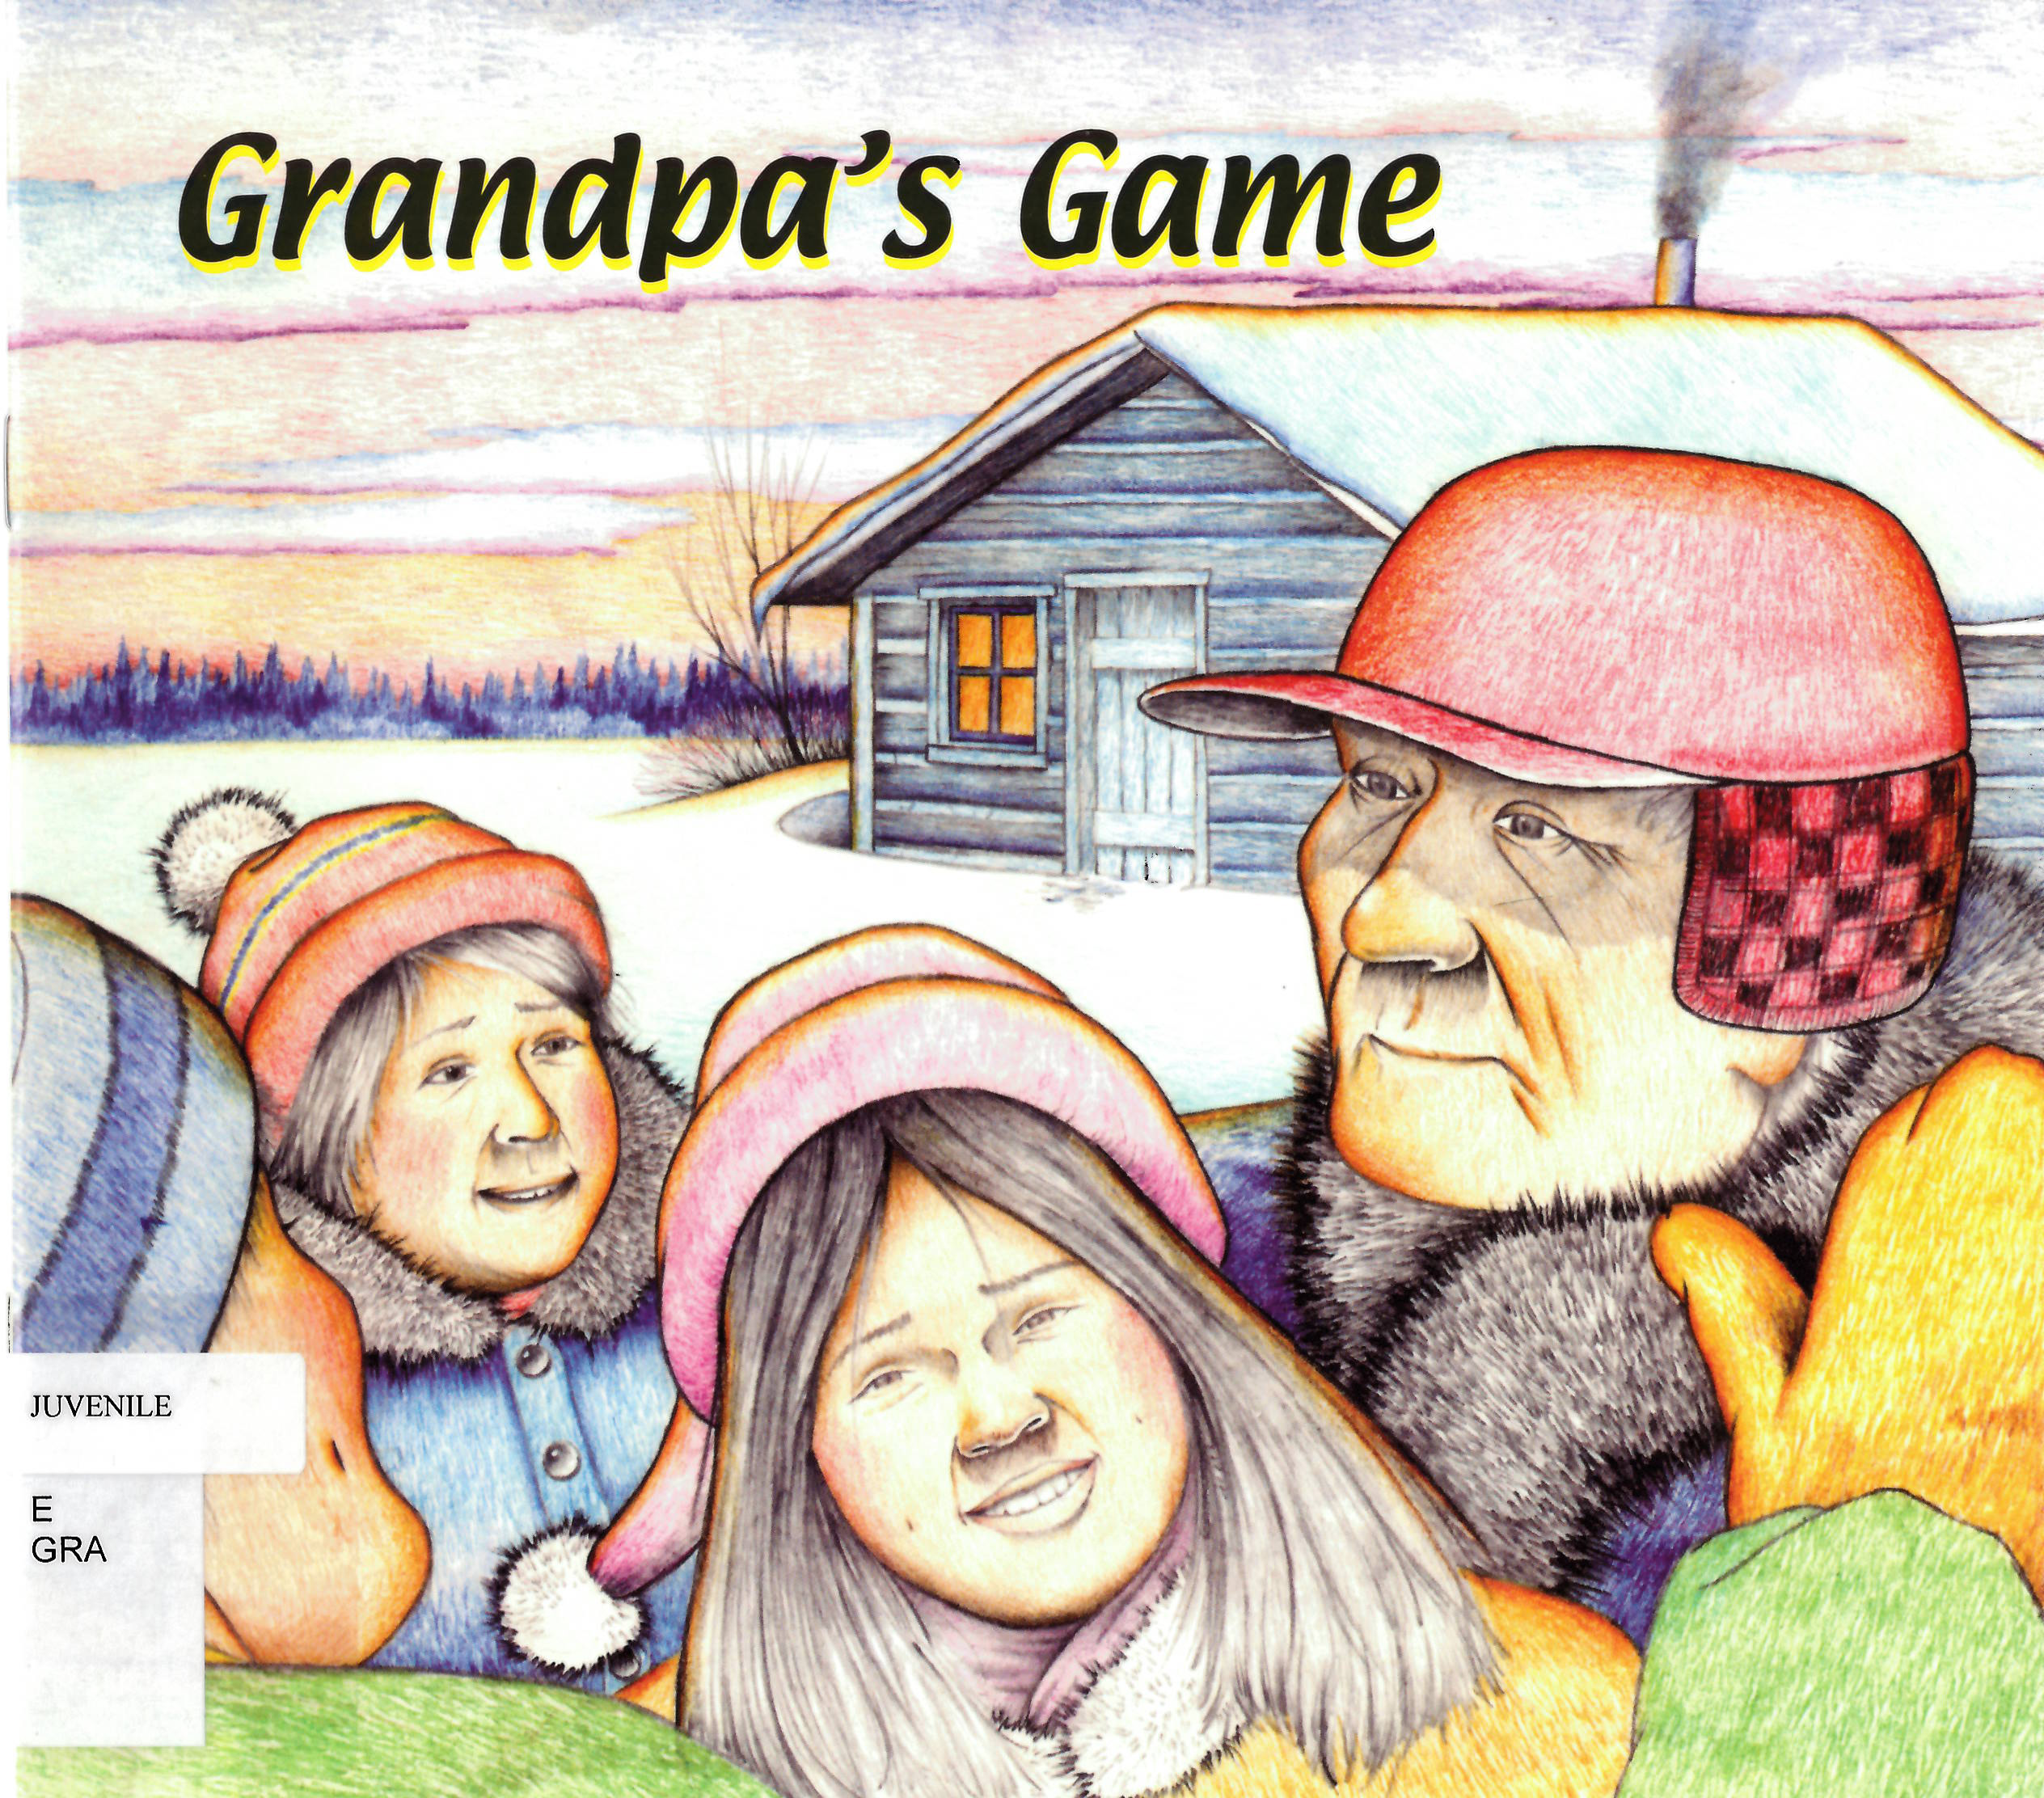 Grandpa's game